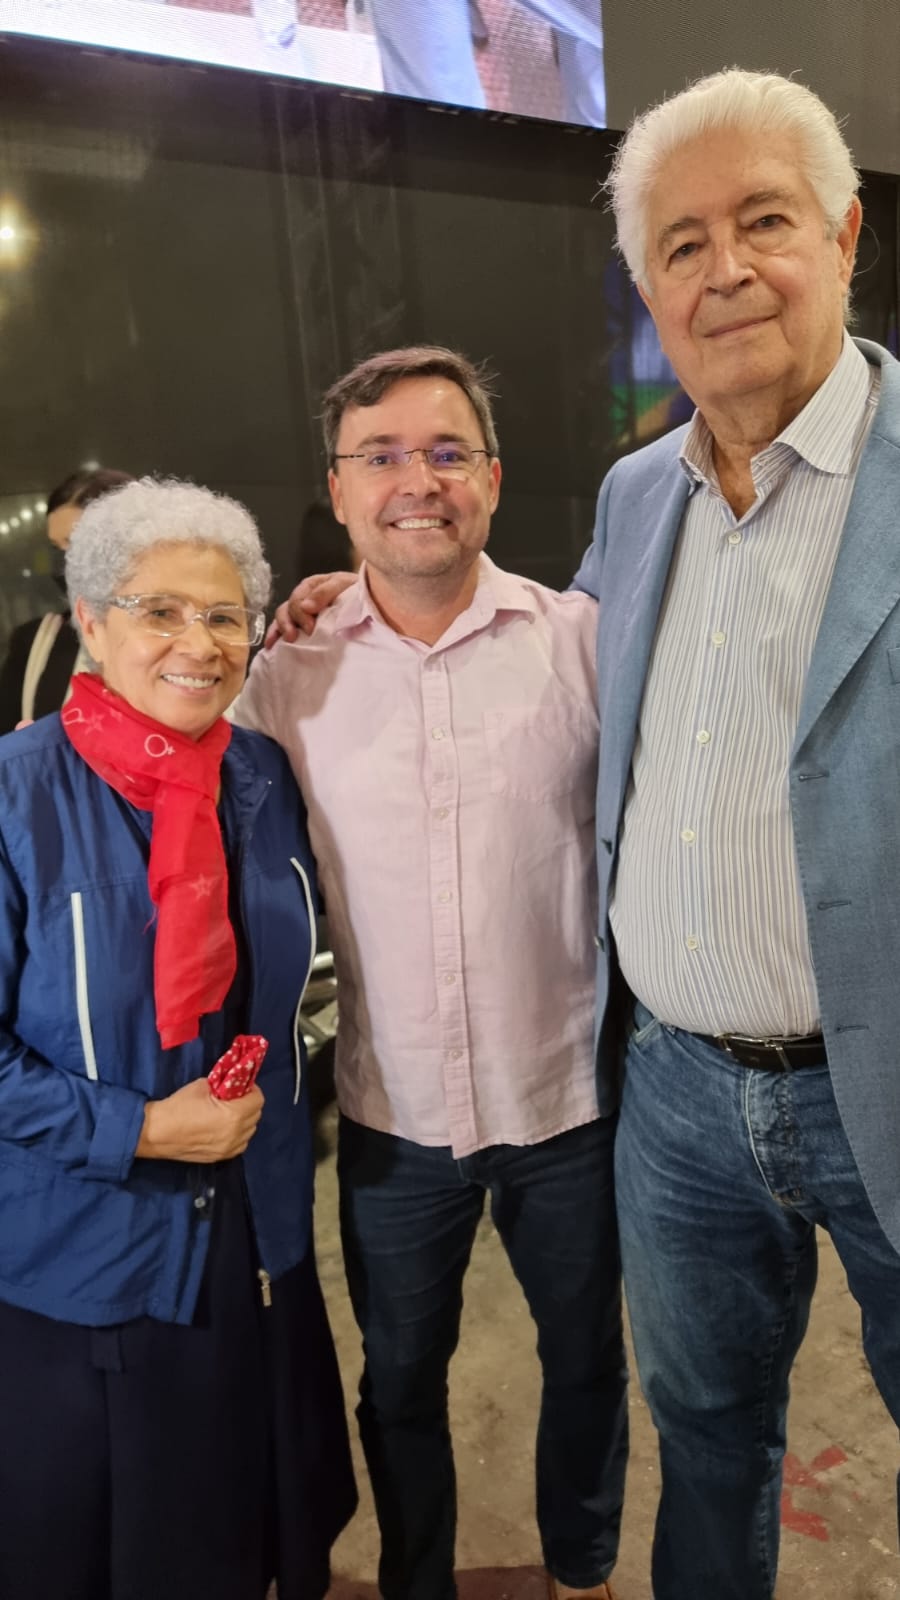 Governadora Regina Sousa, Fábio Novo e Roberto Requião no evento em São Paulo